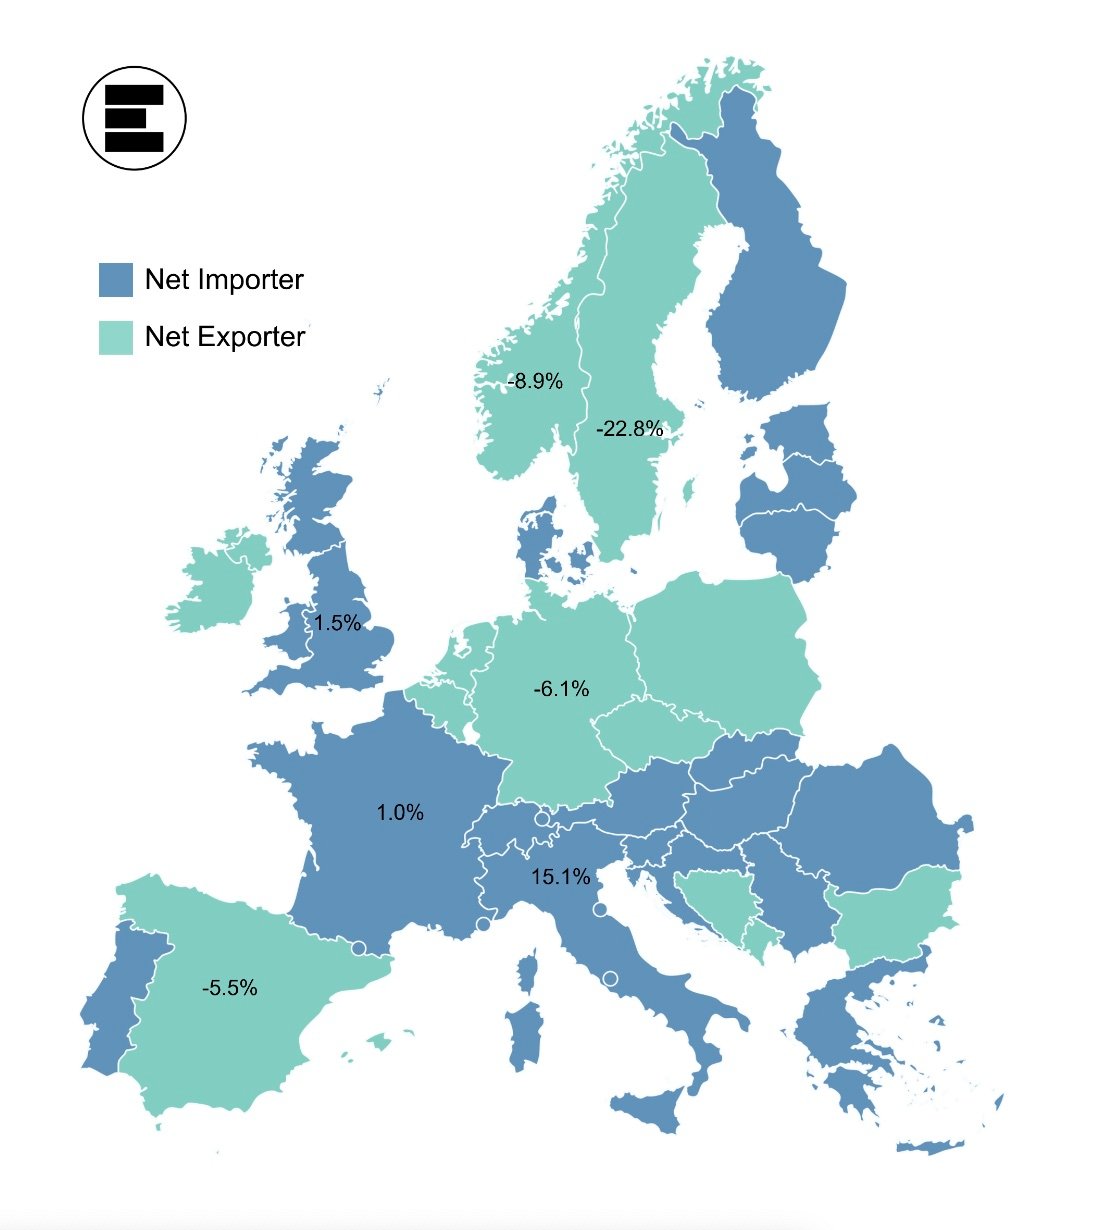 Швеция обогнала Францию как крупнейшего нетто-экспортера электроэнергии в Европе. Источник:  EnnAppSys